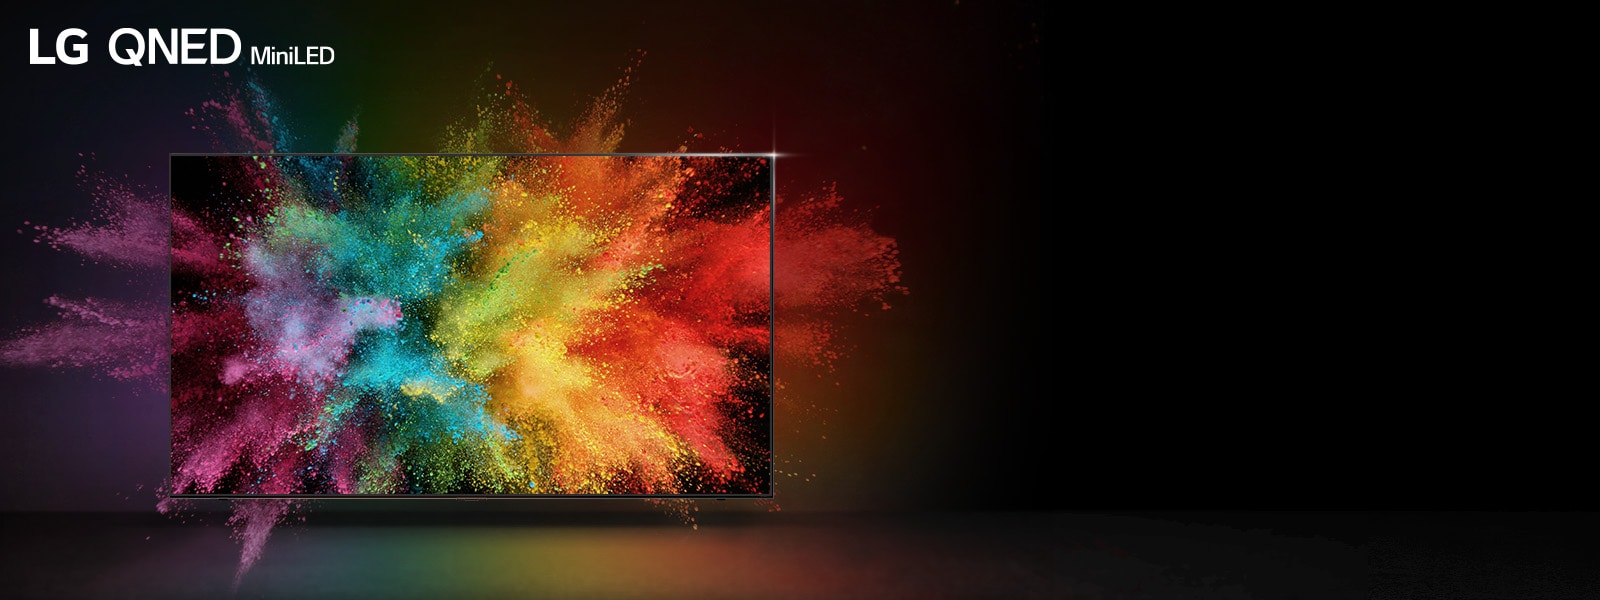 تلویزیون LG QNED در اتاقی تاریک. پودرهای رنگی موجب ایجاد انفجاری از رنگ های رنگین کمانی در تلویزیون شده است.